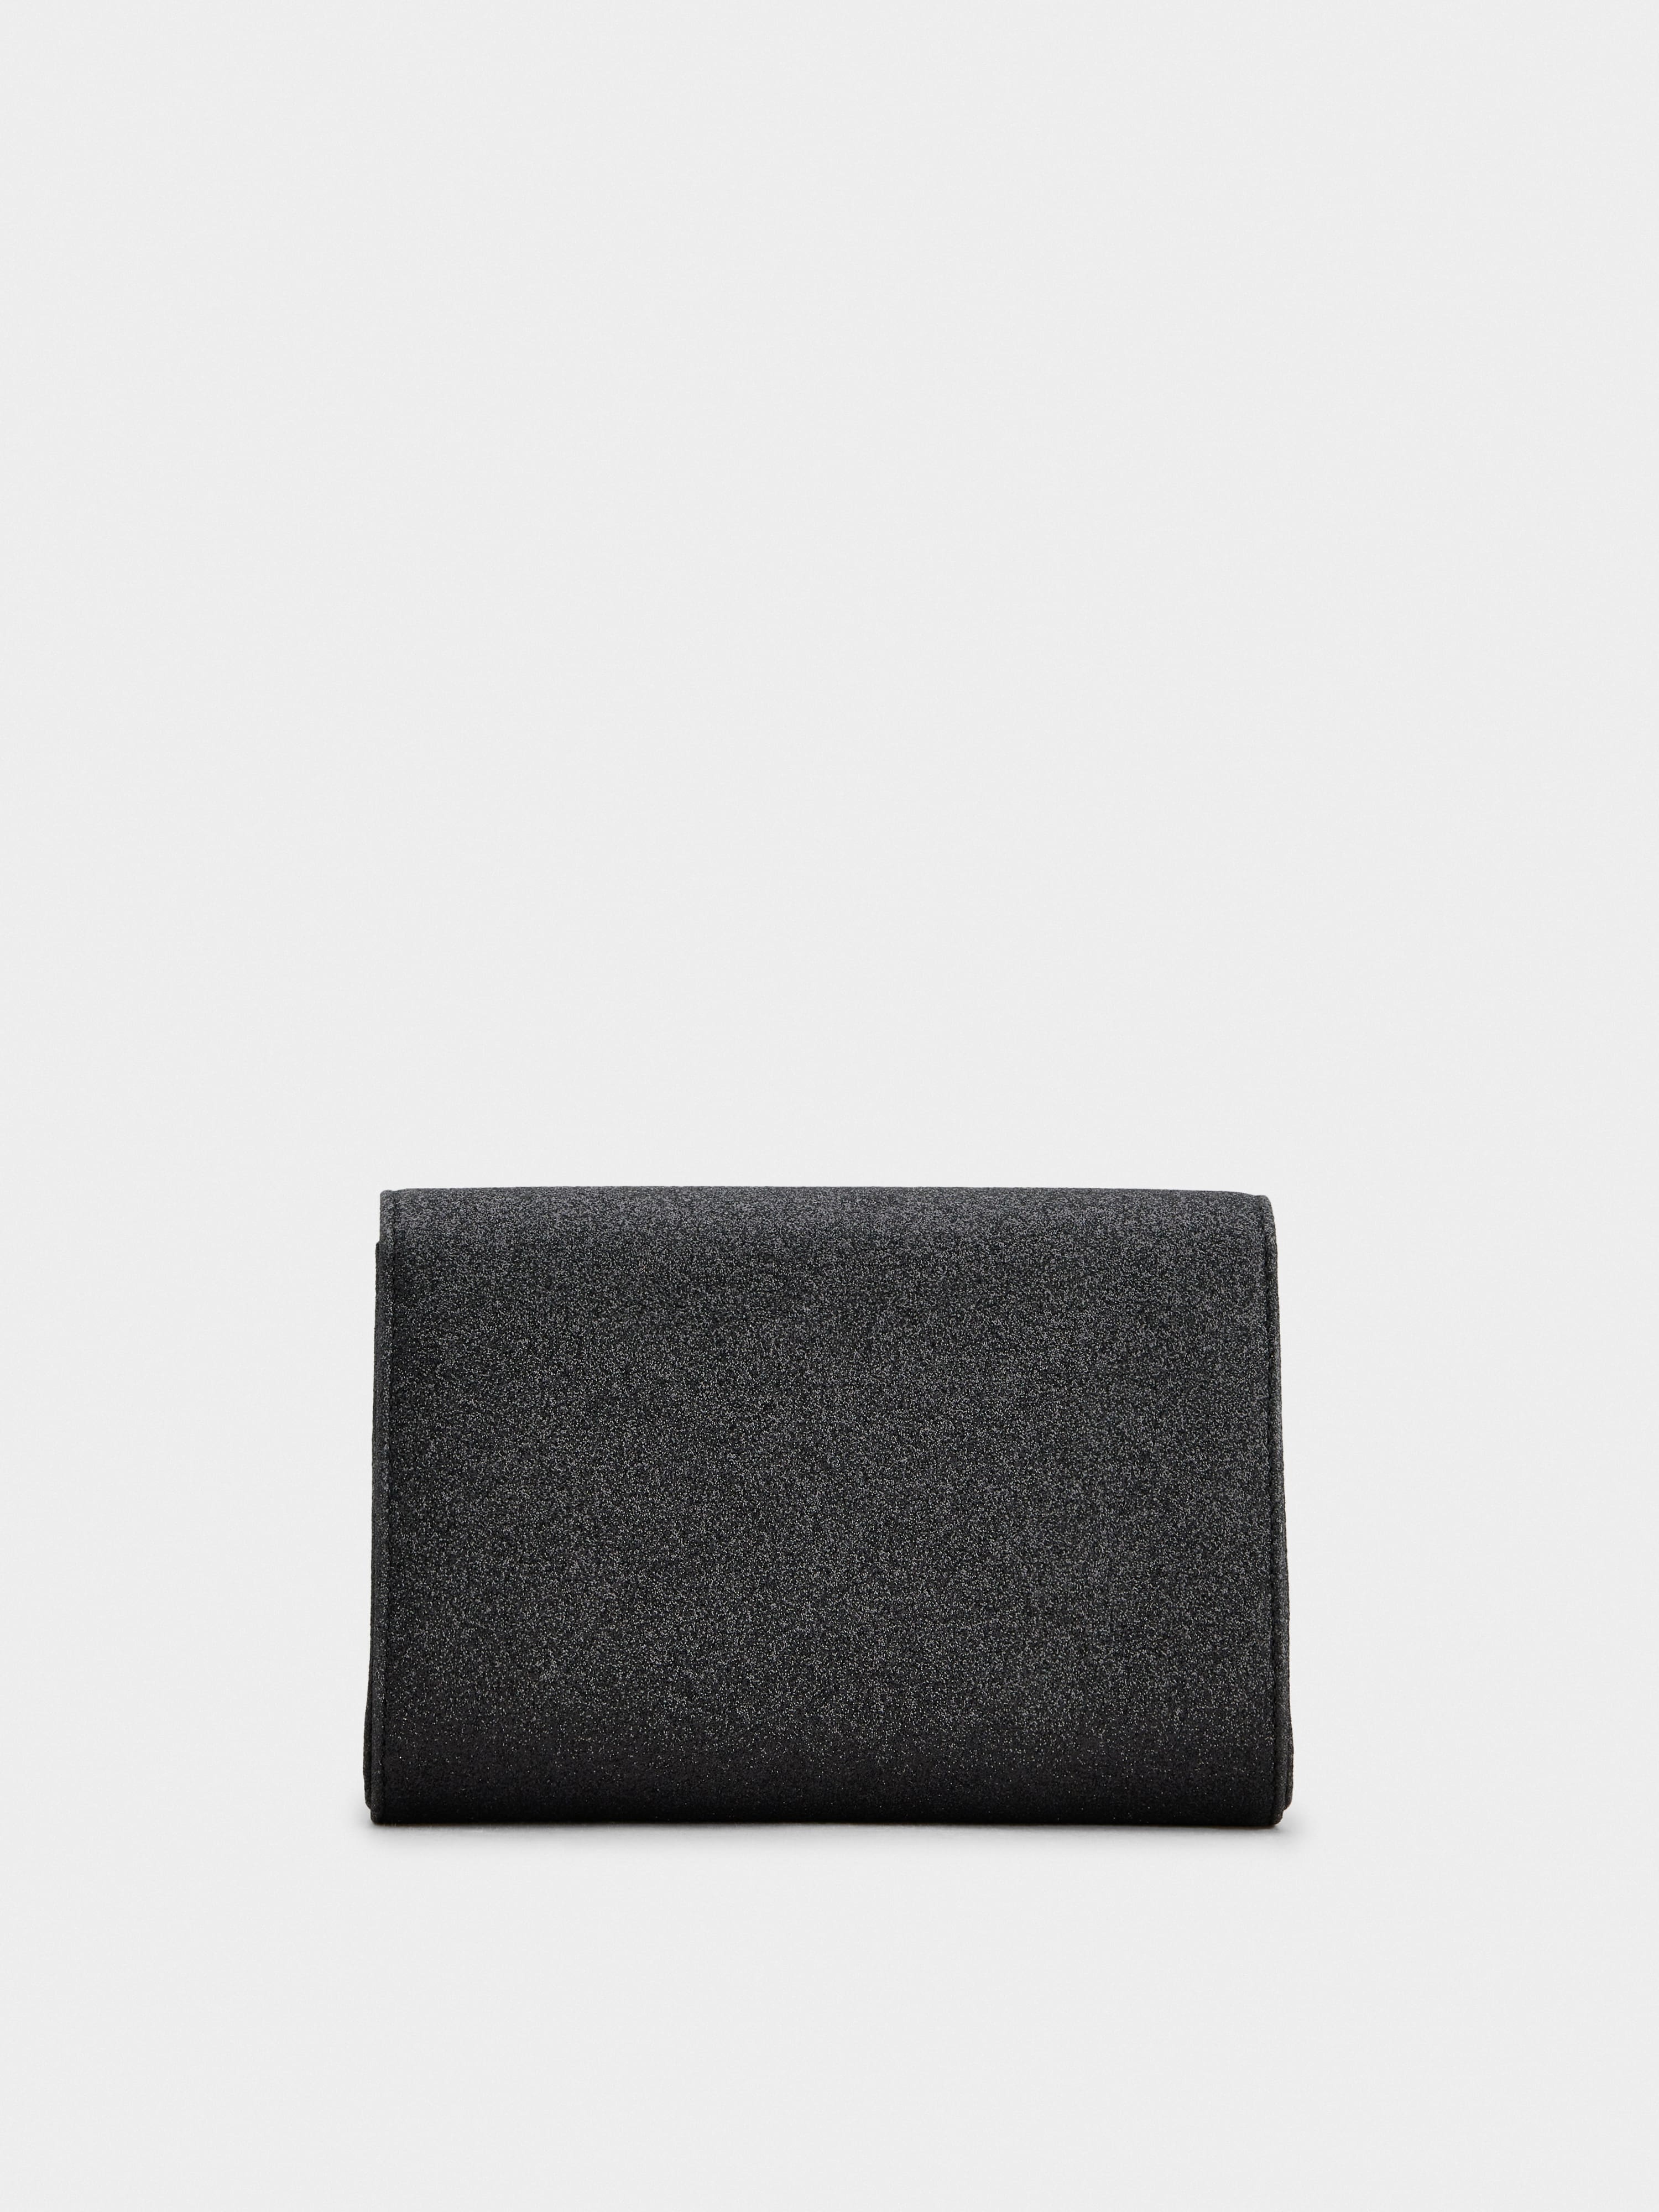 Bouquet Strass Dark Mini Clutch Bag in Glitter Fabric - 4